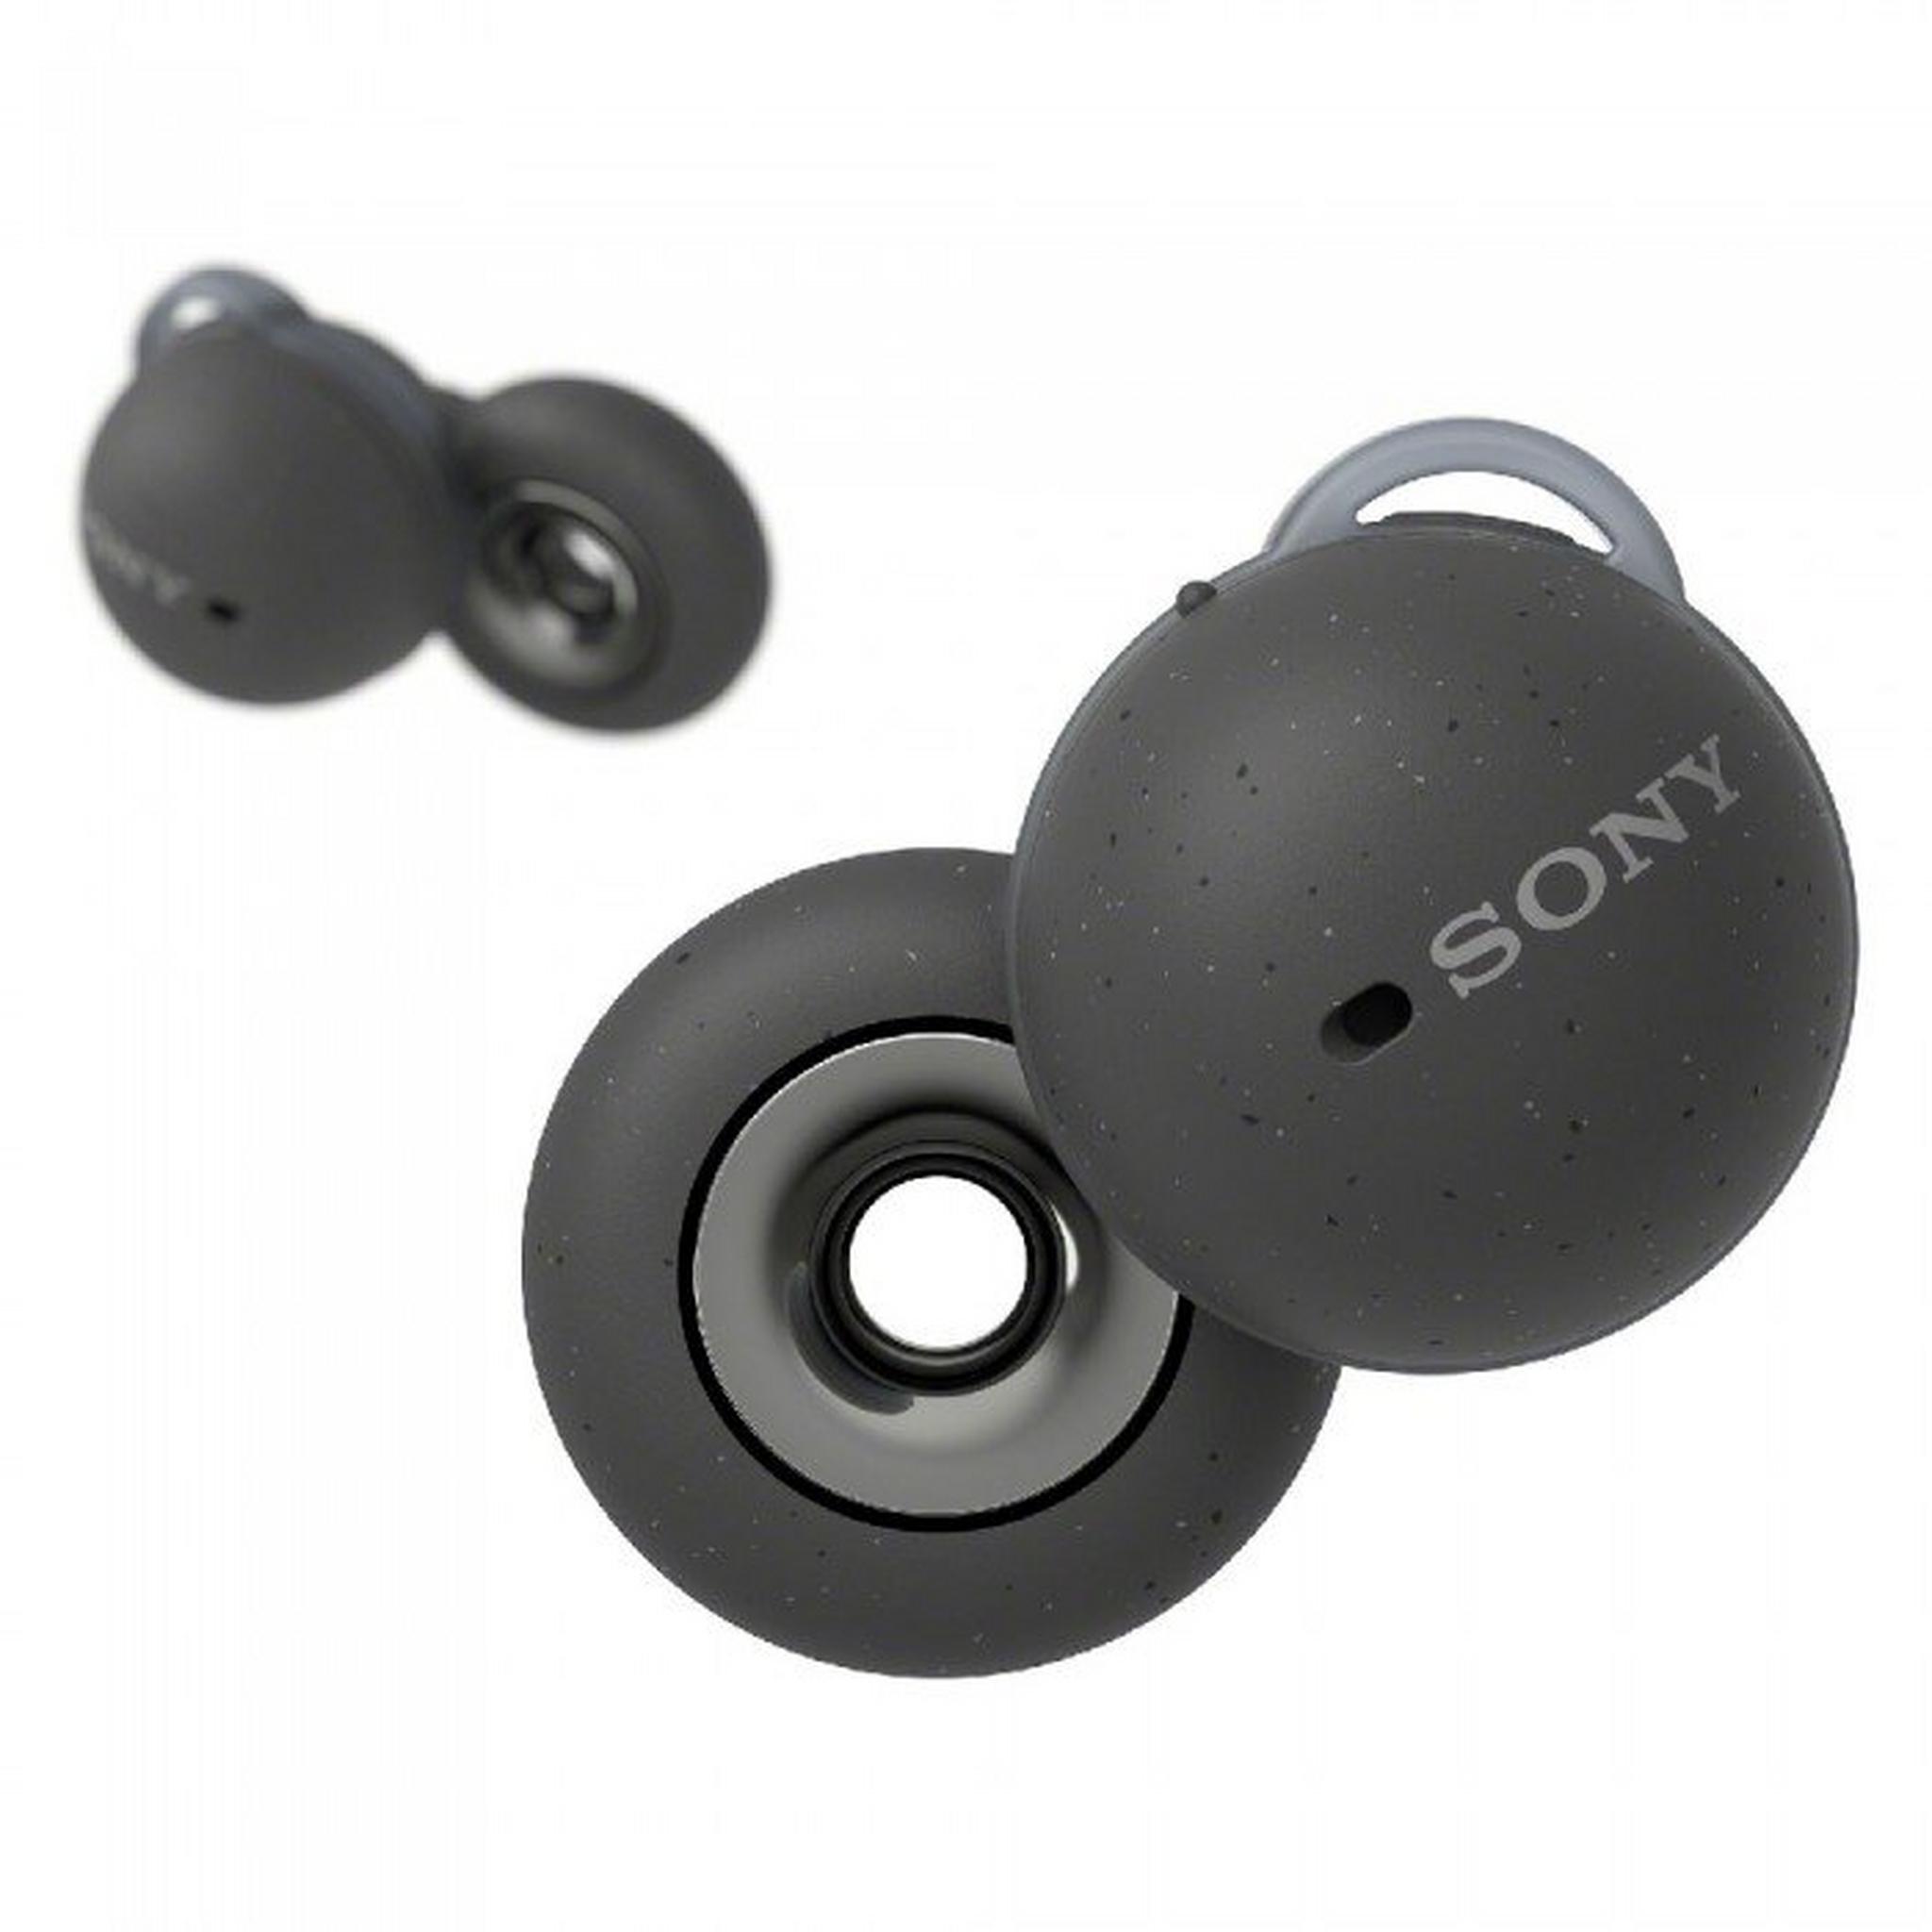 Sony LinkBuds True Wireless Earbuds - Black